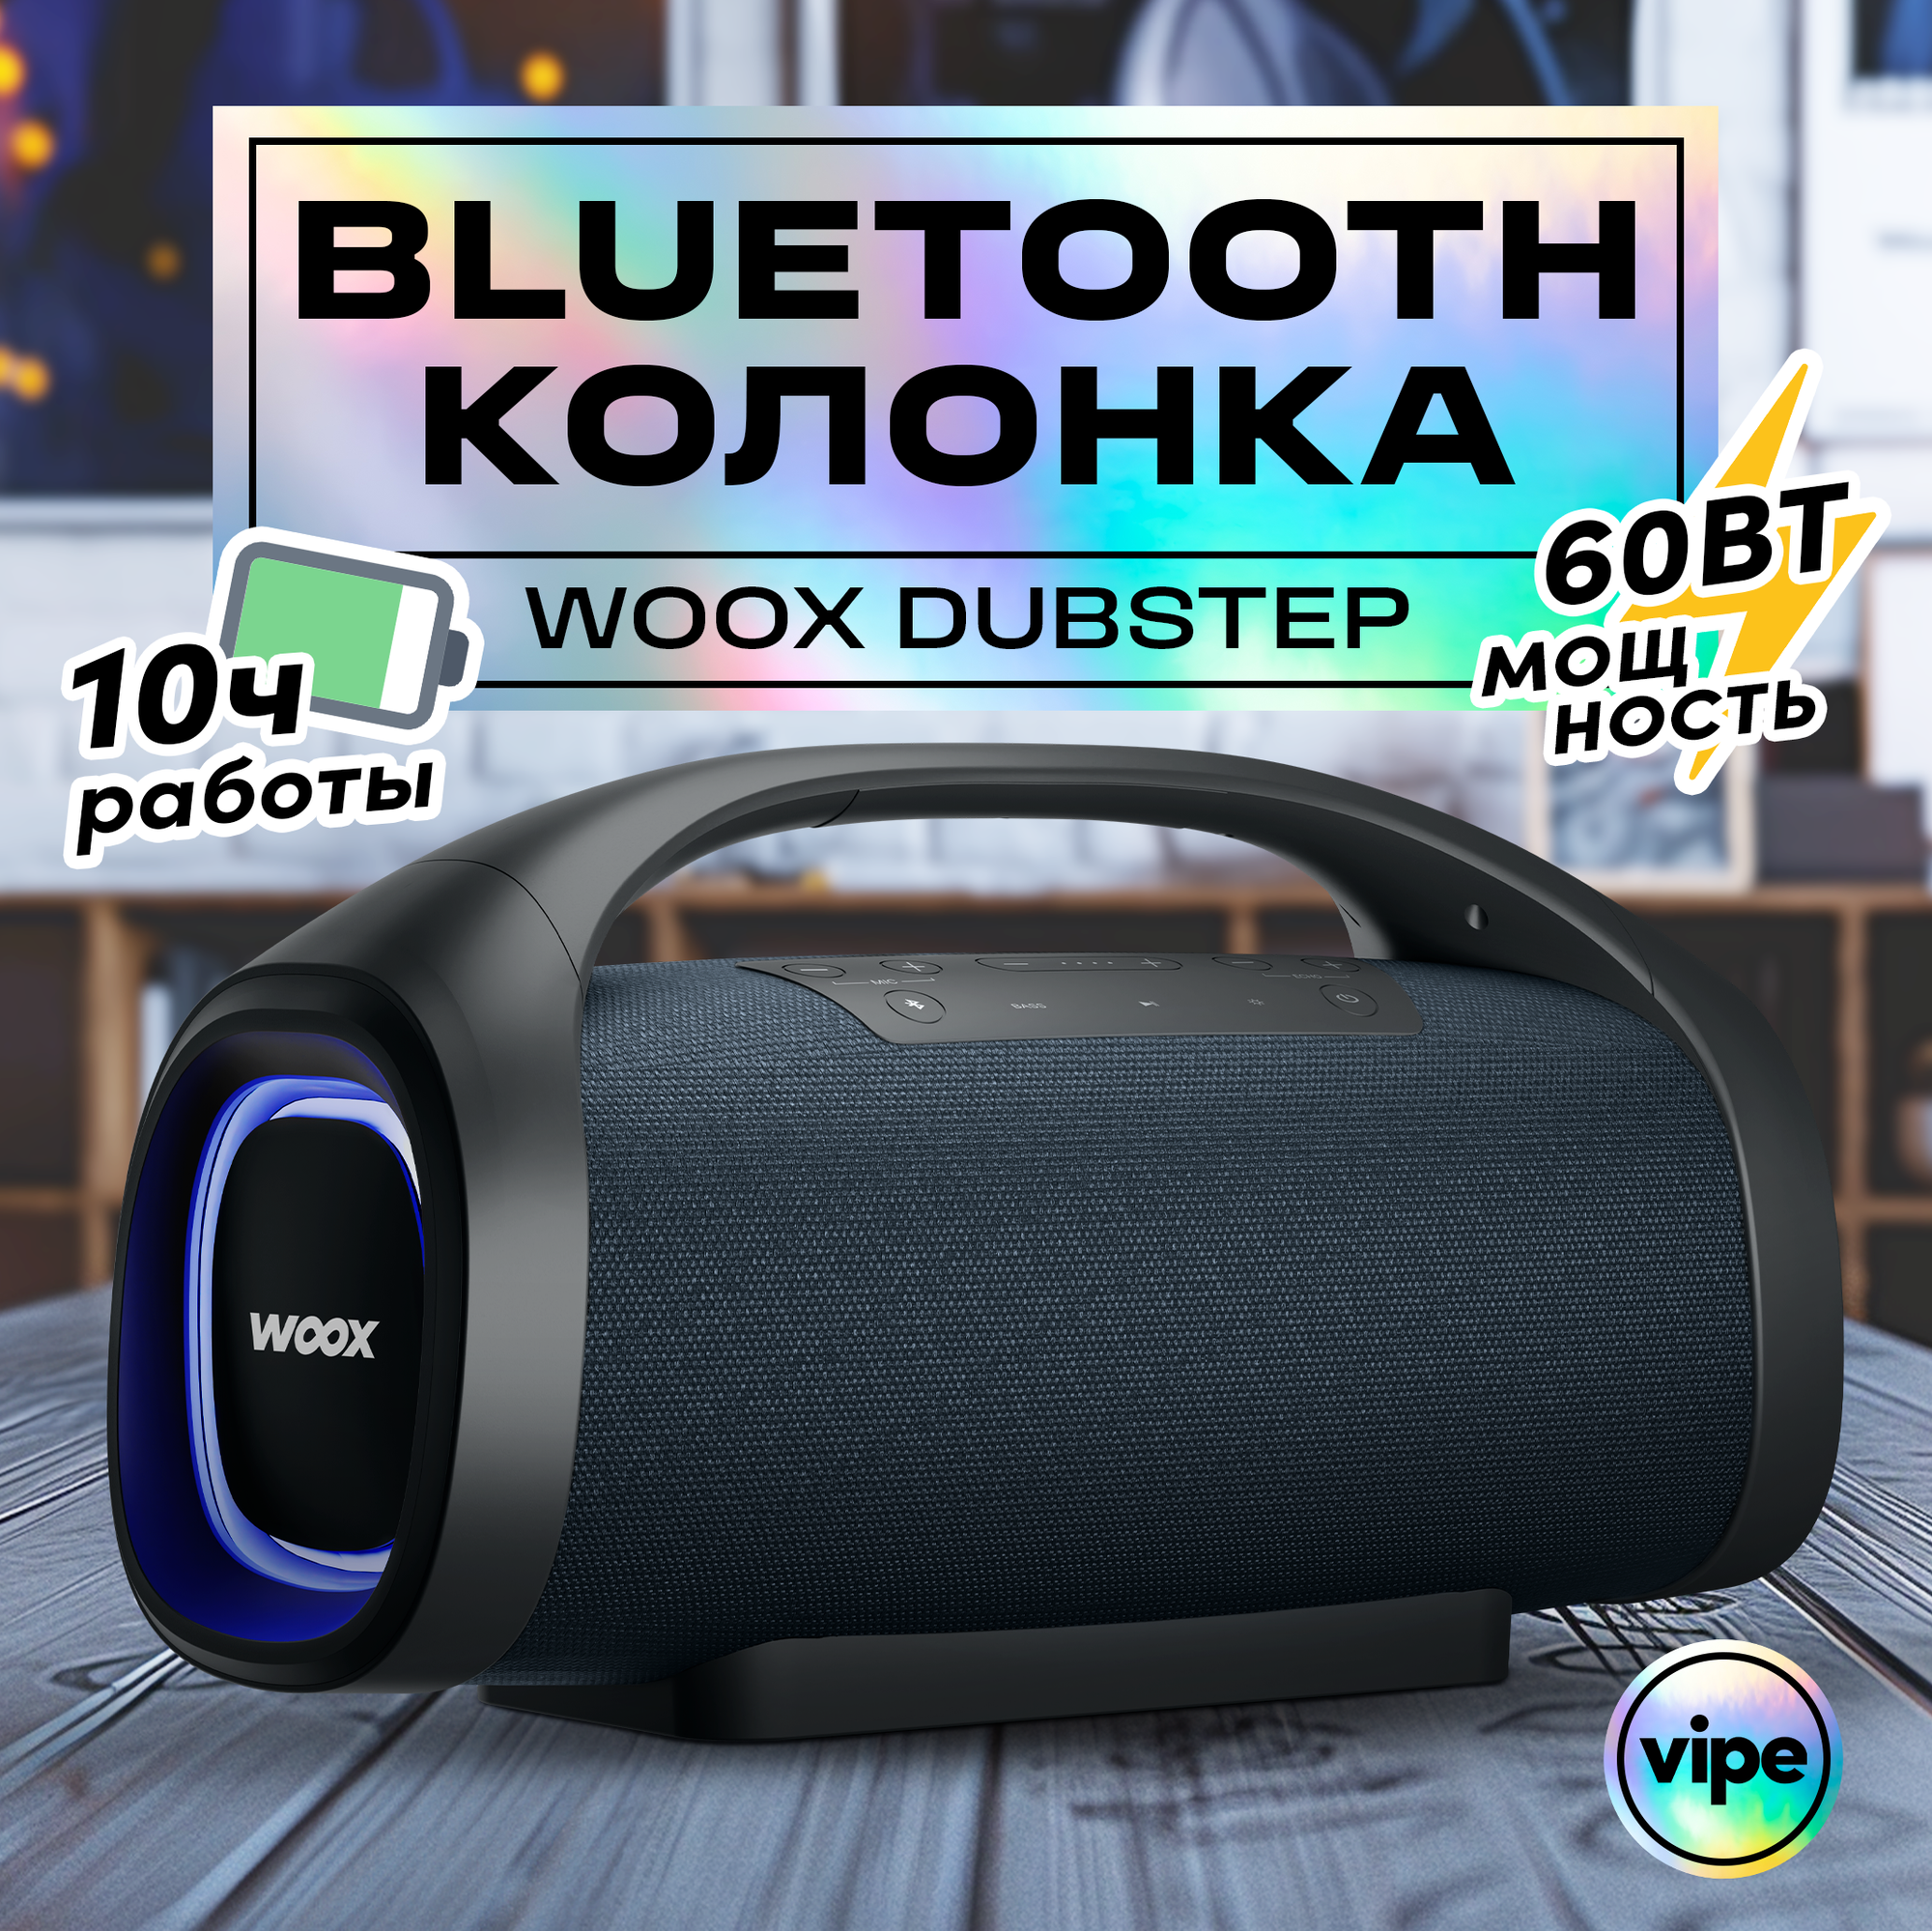 Портативная беспроводная Bluetooth колонка Vipe Woox Dubstep